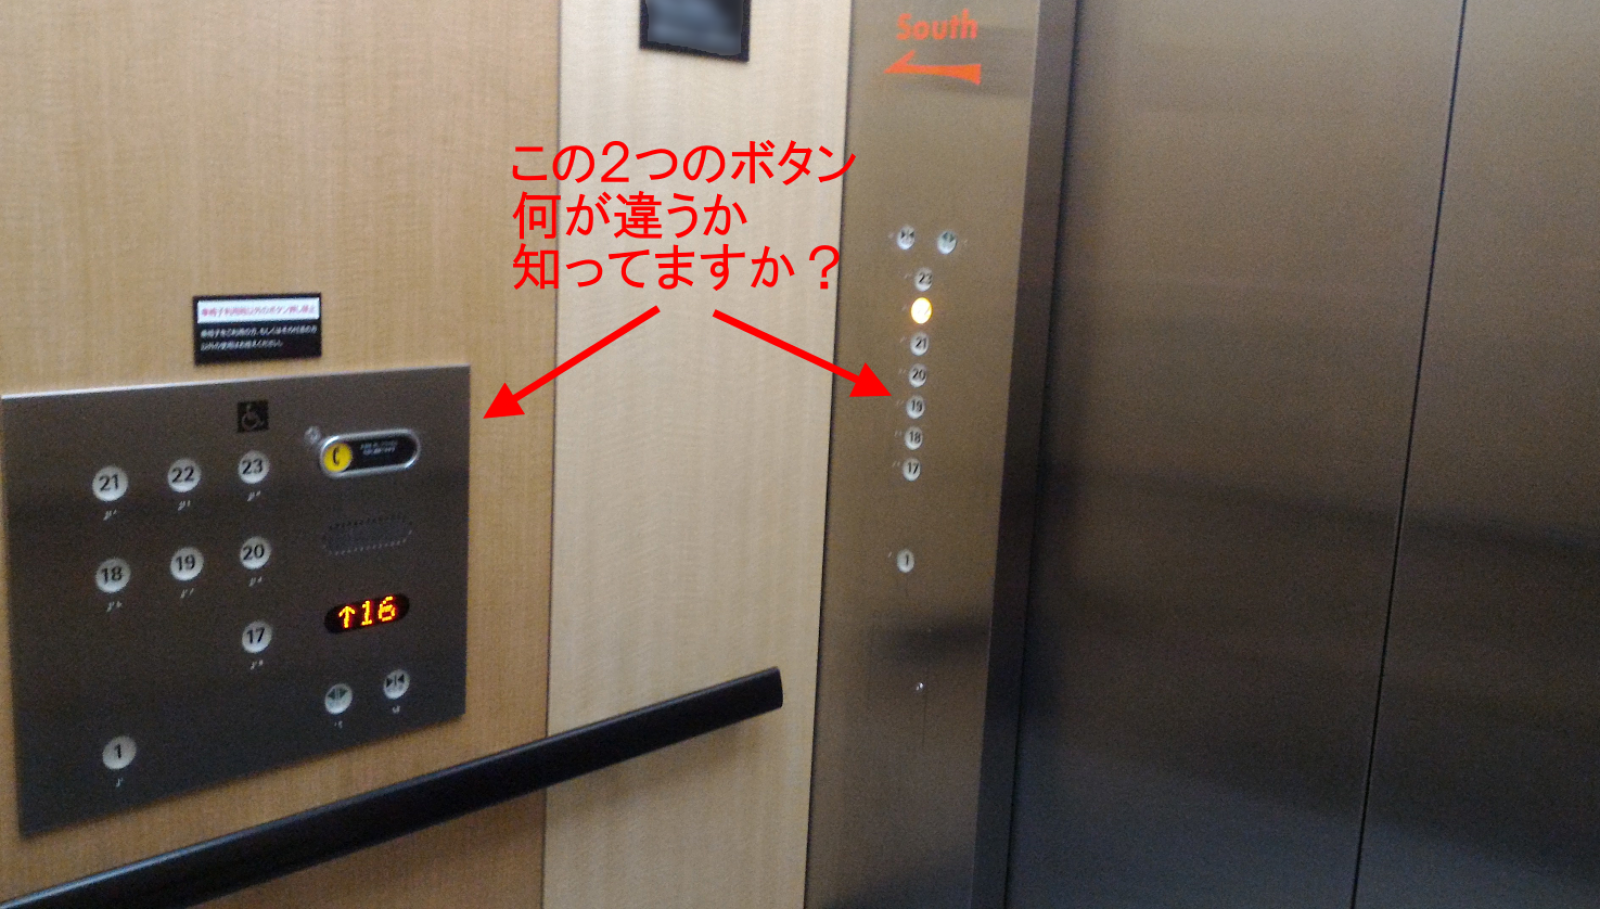 エレベーター側面のボタンを押すと になる それならそうと わかりやすく示そうよ 初代編集長ブログ 安田英久 Web担当者forum